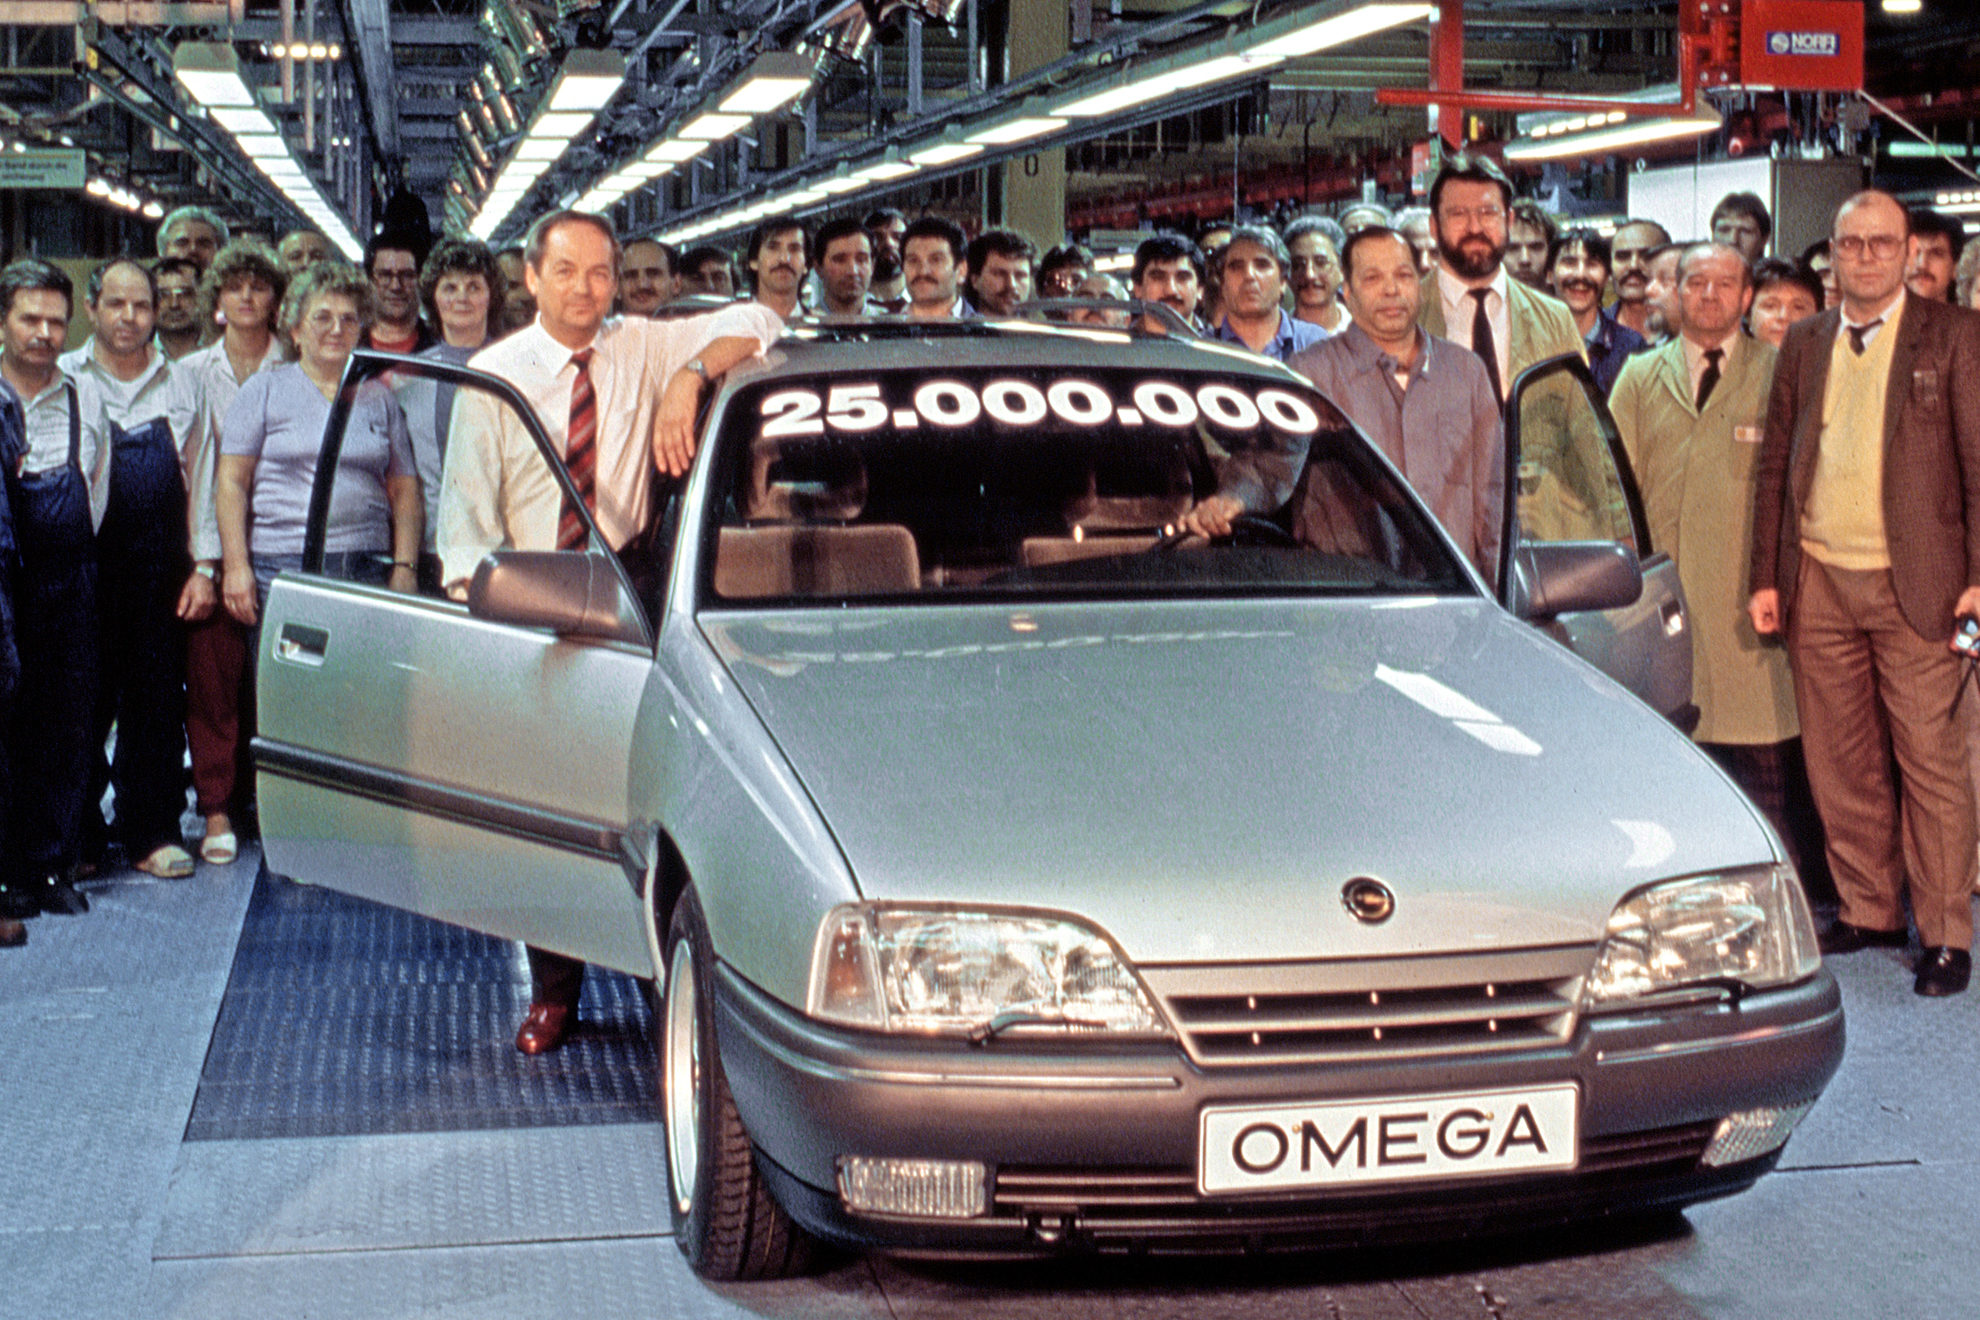 Opel 25.000.000.